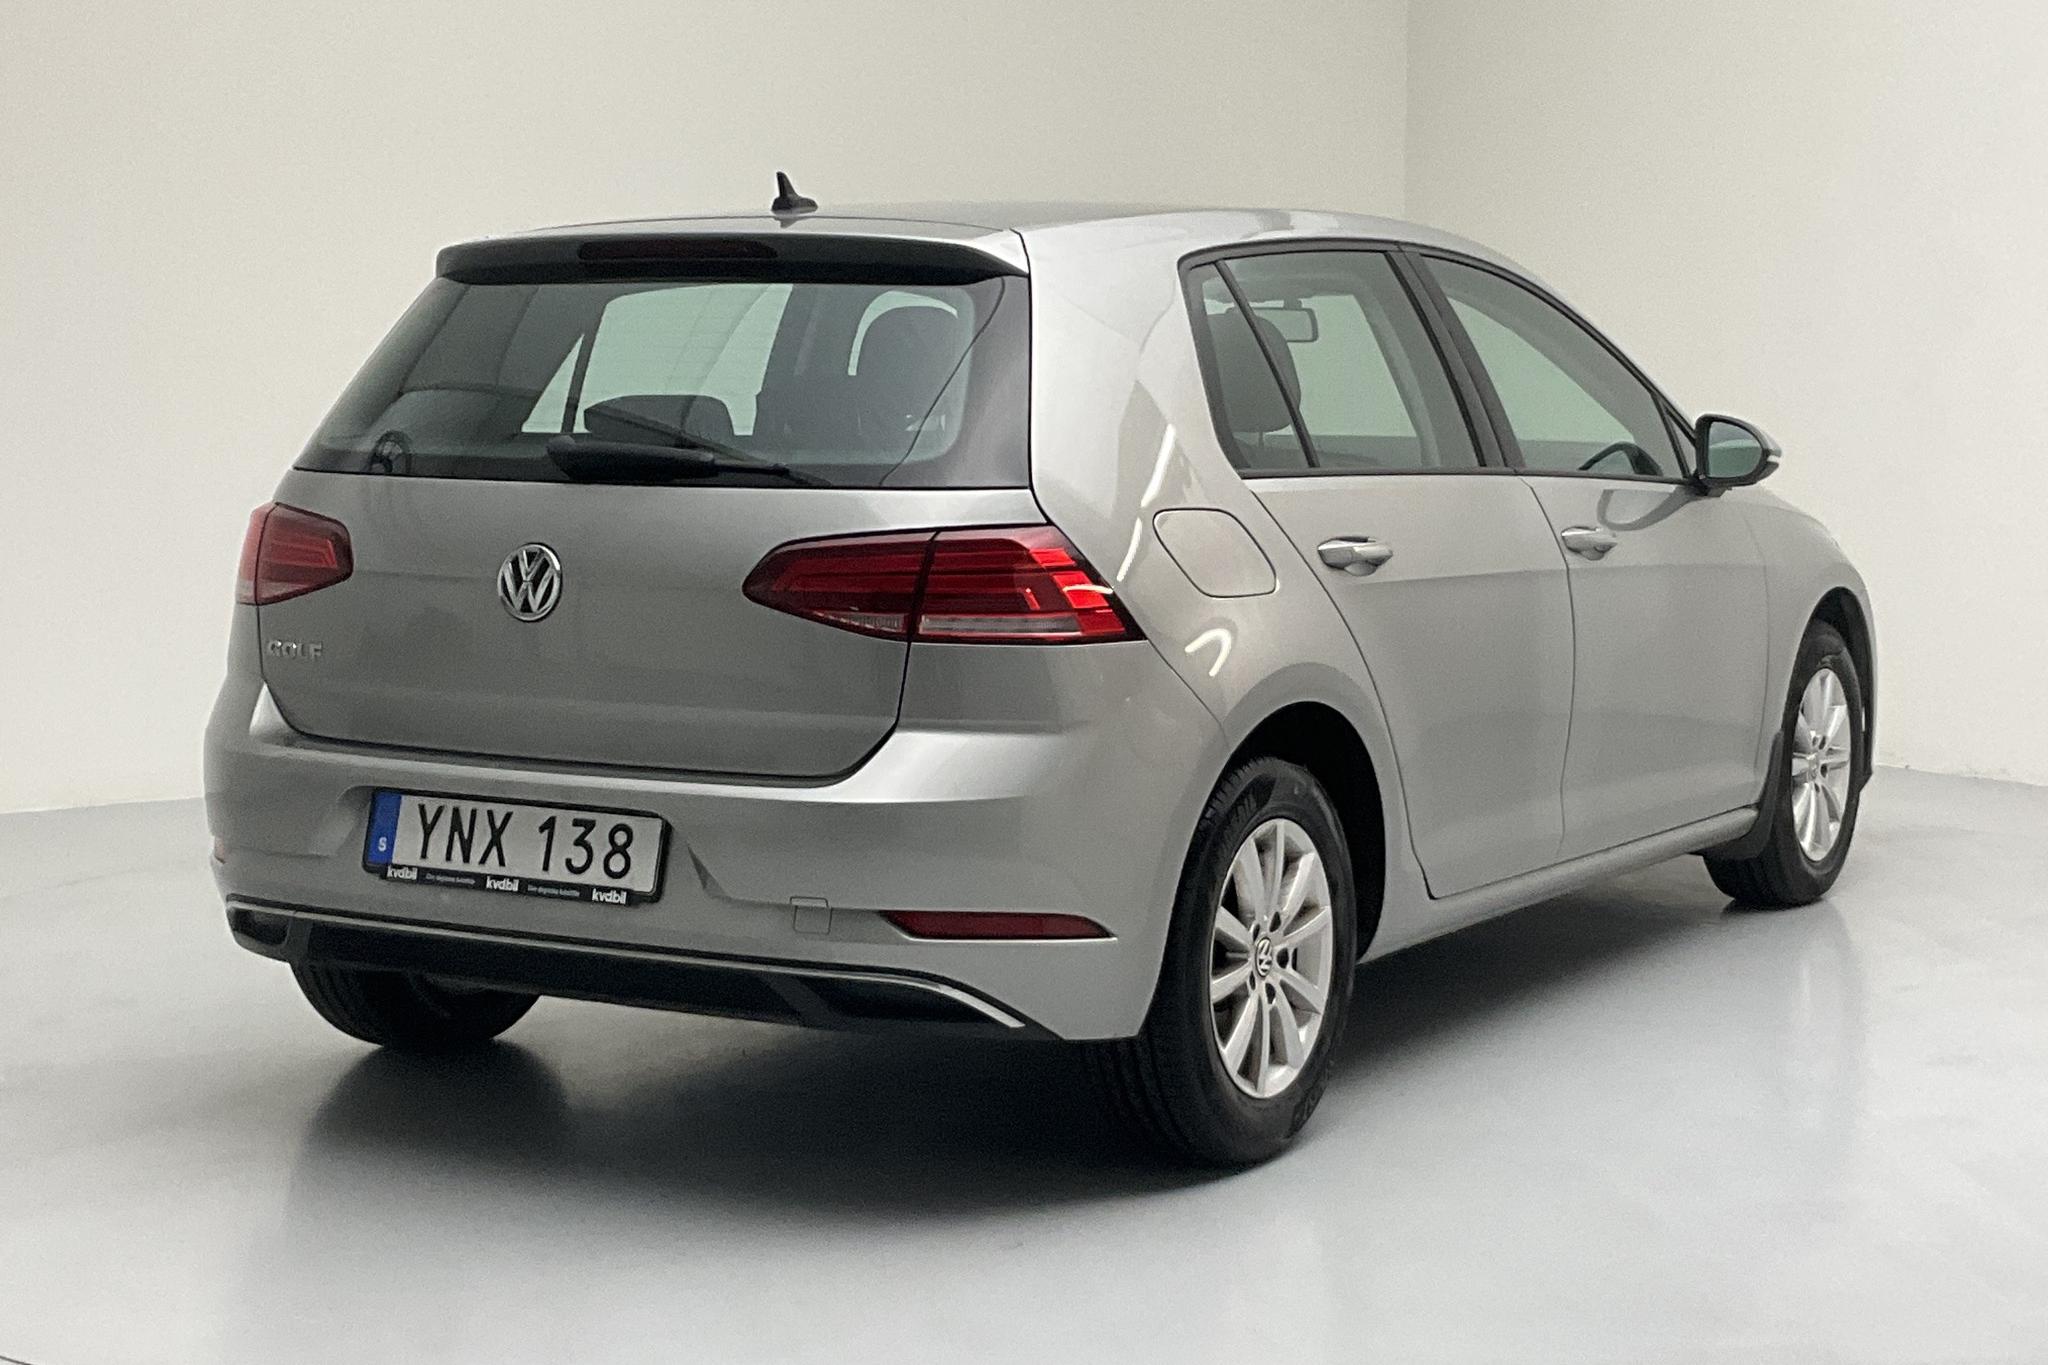 VW Golf VII 1.0 TSI 5dr (110hk) - 9 567 mil - Automat - silver - 2018